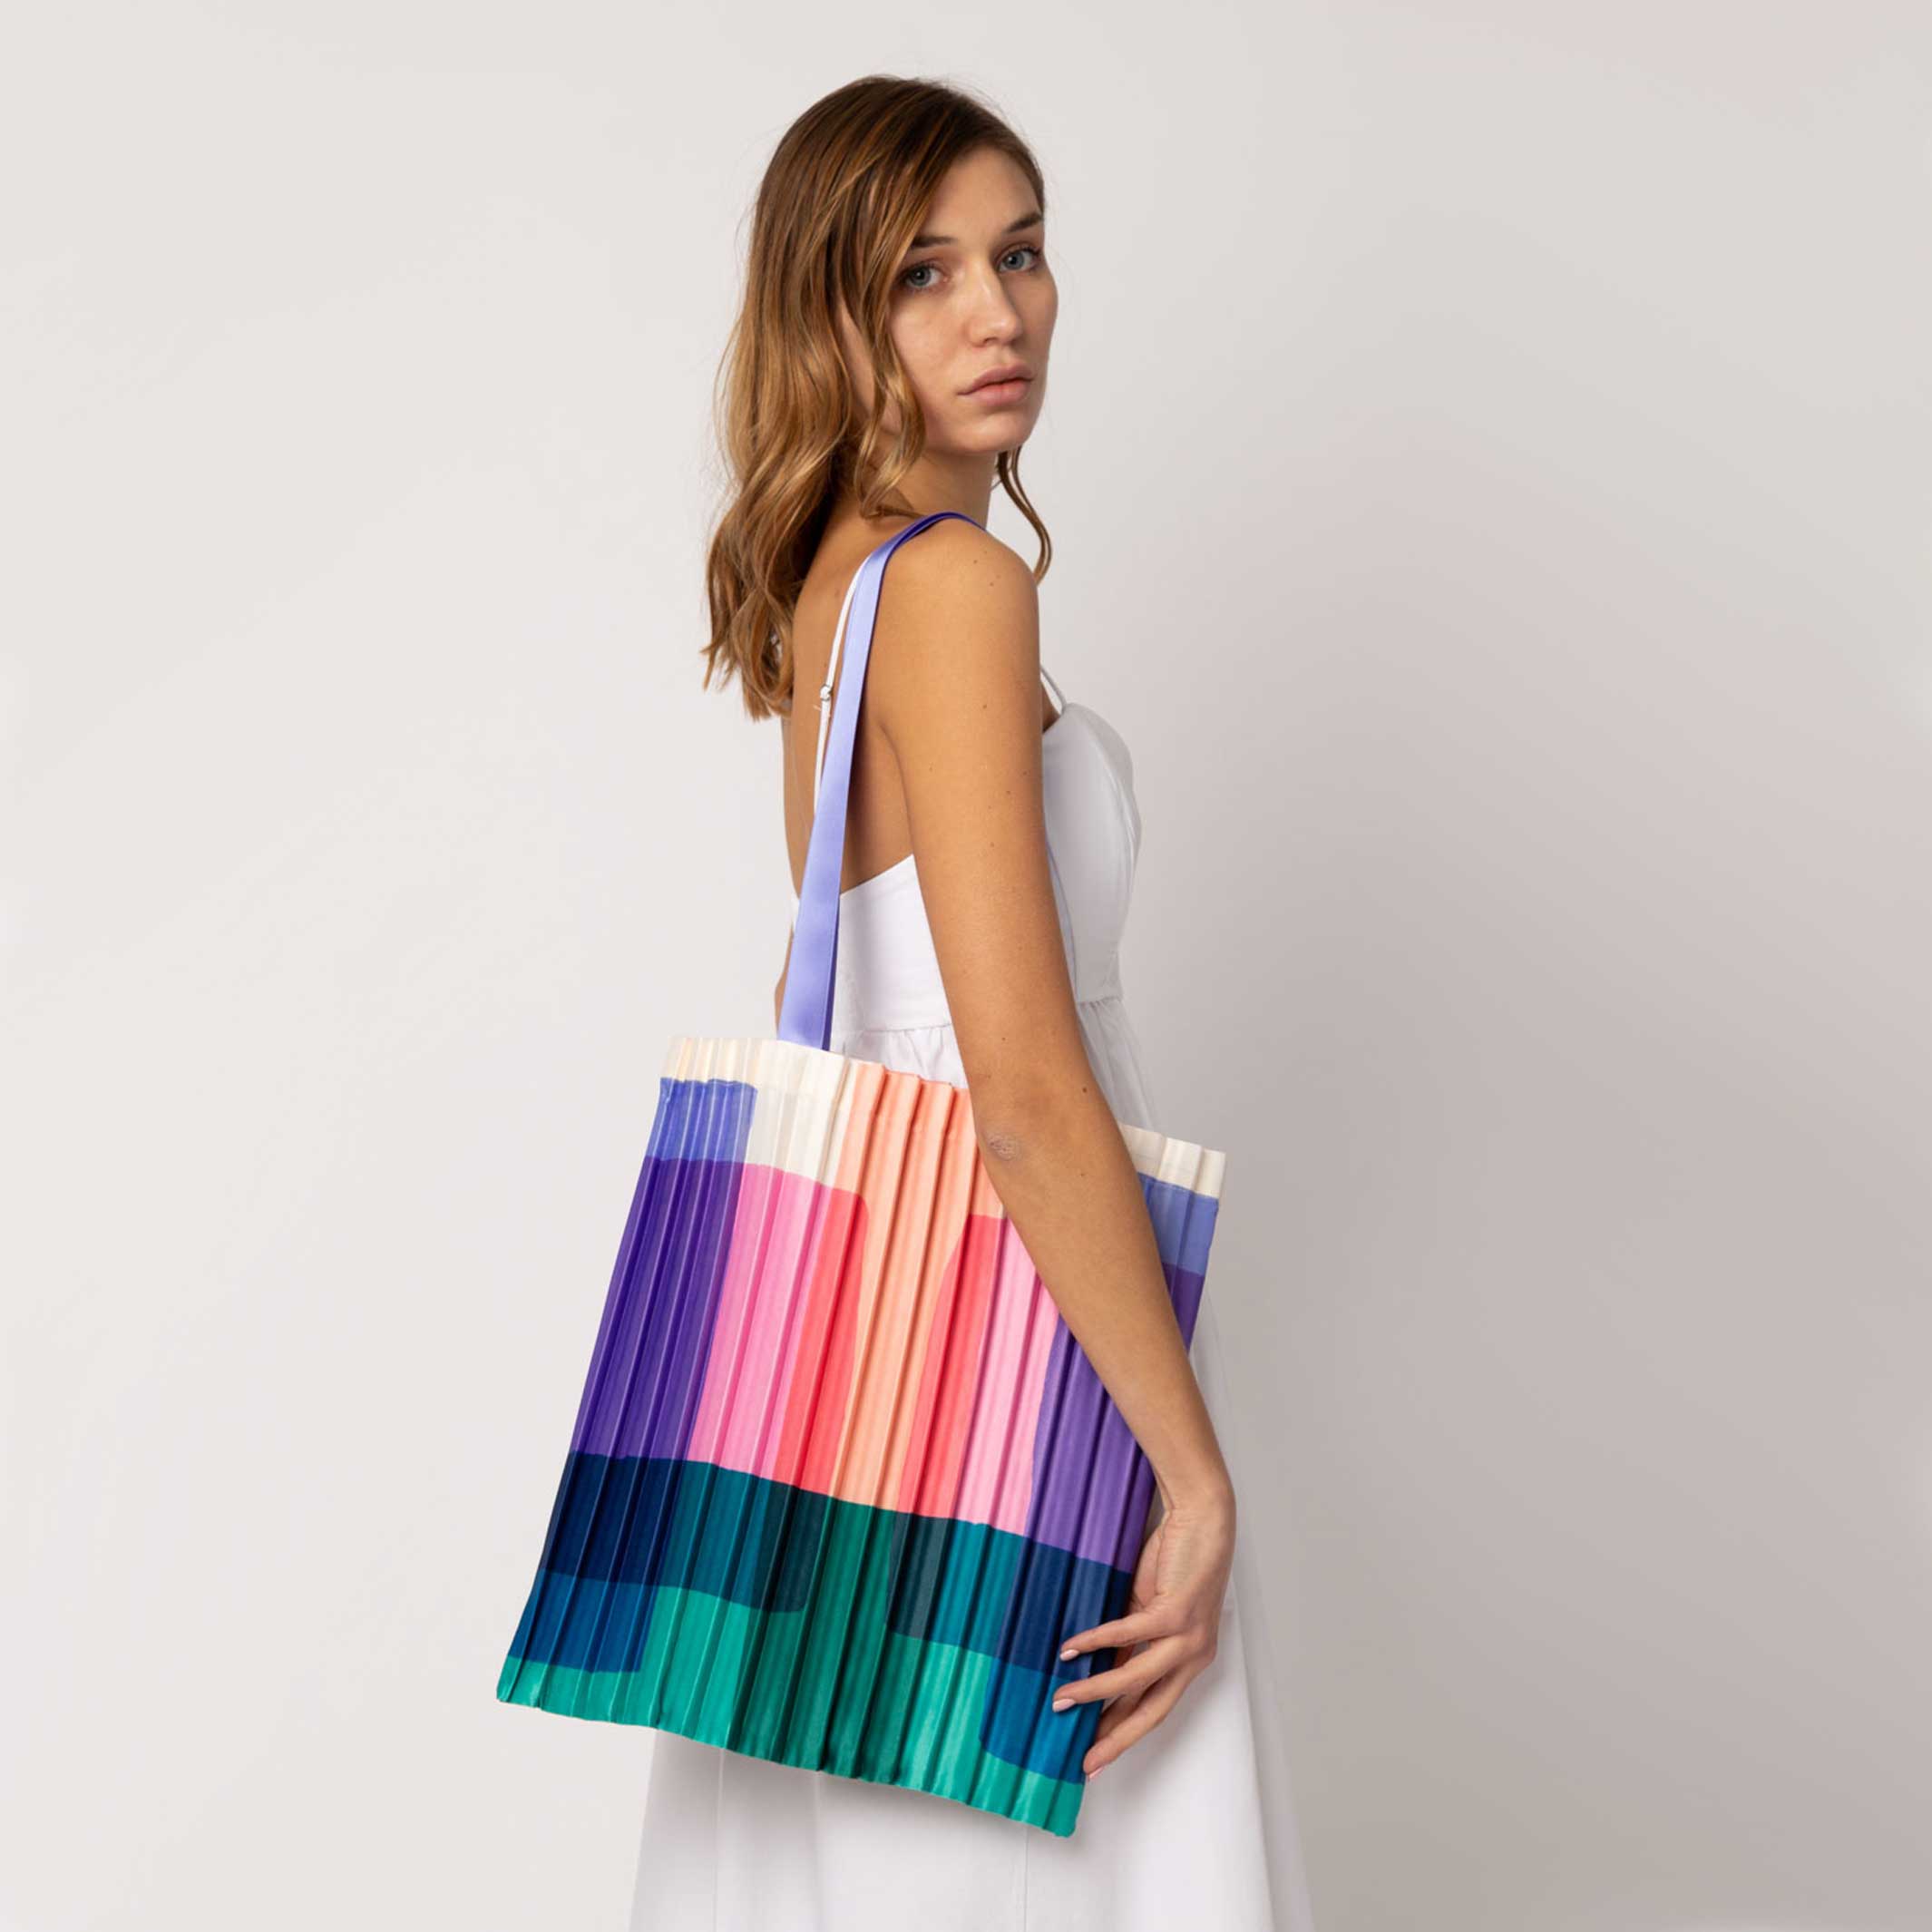 Buy Women Handbag Pleated Hobo Bag Round Handle Bucket Leather Grocery Bag  Crossbody at Amazon.in